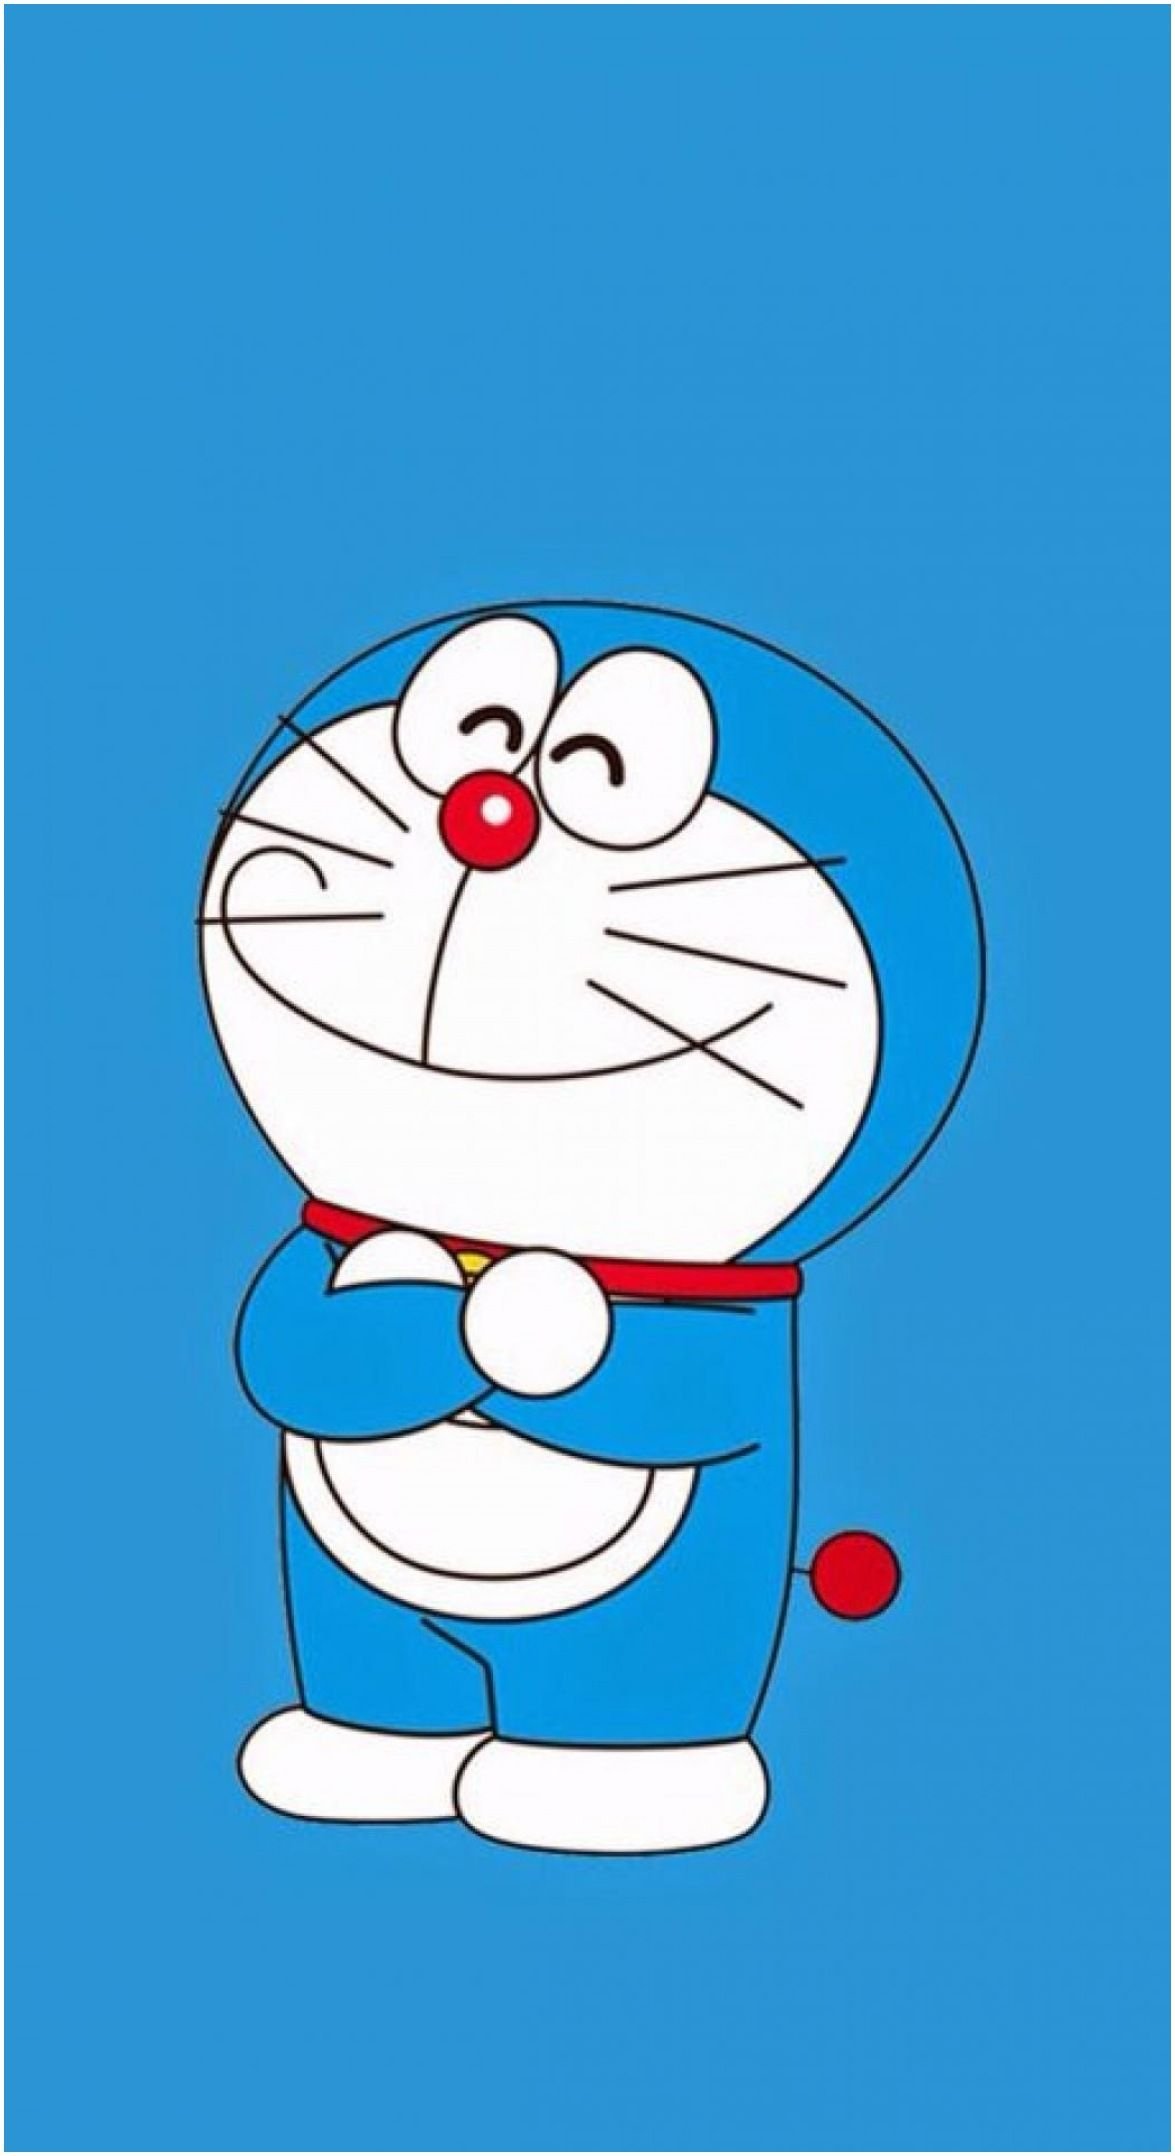 300+] Doraemon Wallpapers | Wallpapers.com